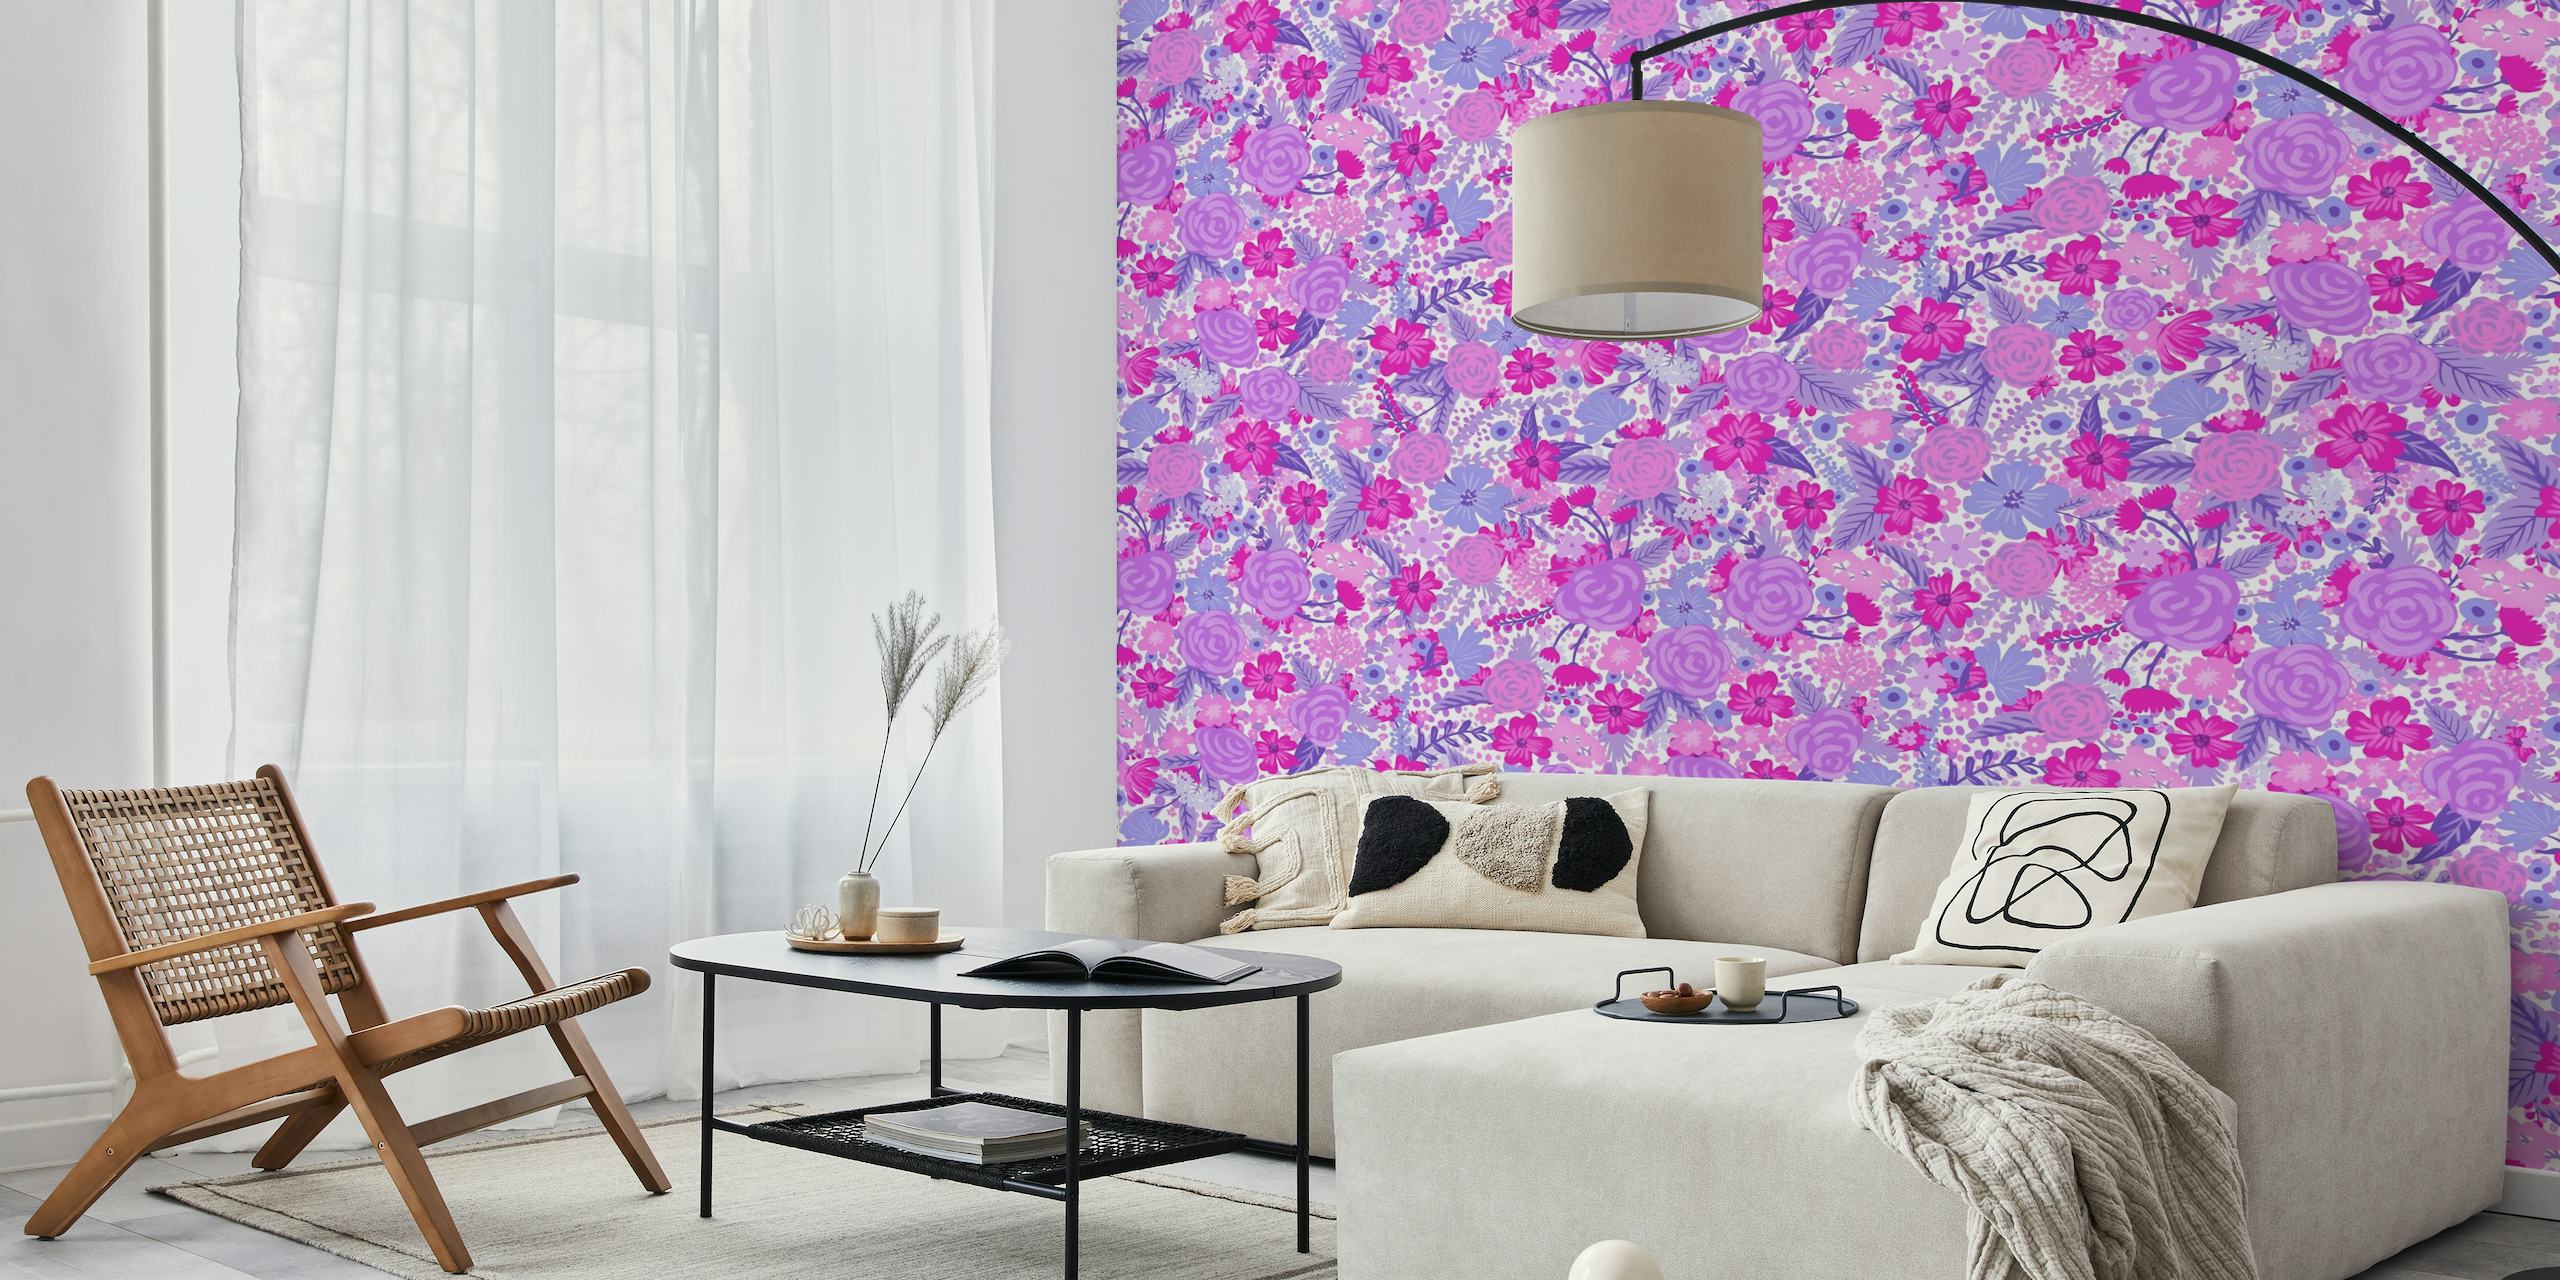 Živá a složitá nástěnná malba s nehmotným květinovým vzorem 3 s fialovými a růžovými květinovými vzory.